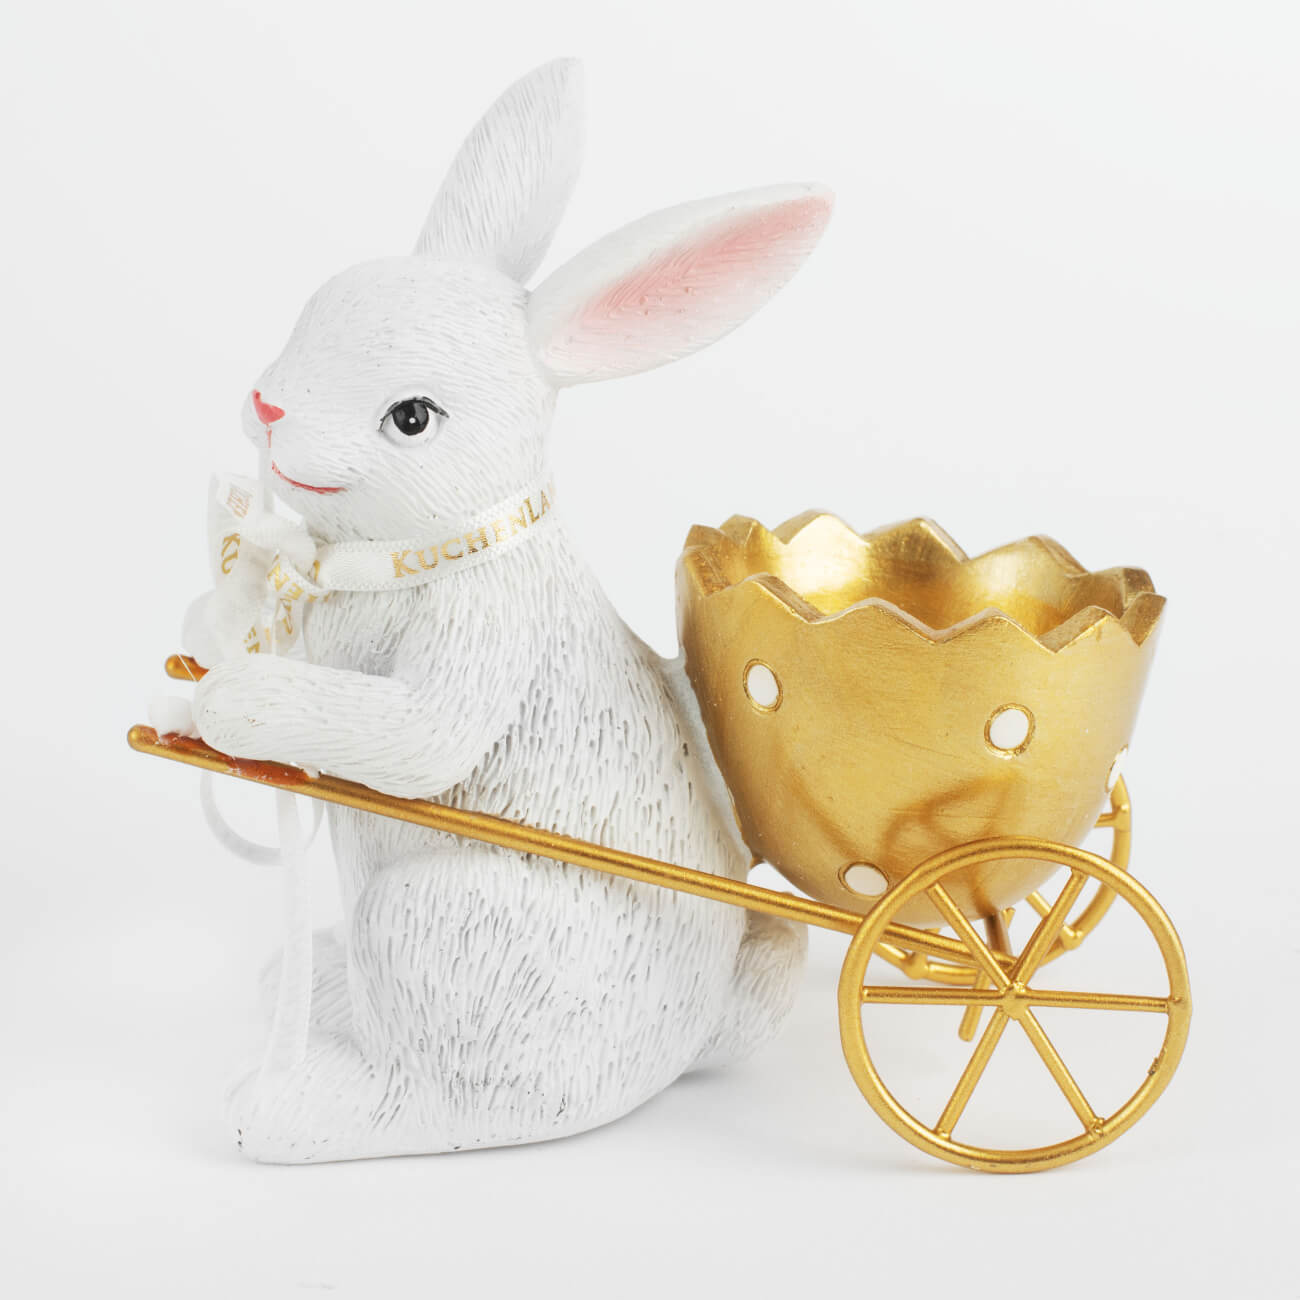 Подставка для яйца, 12 см, полирезин, бело-золотистая, Кролик с тележкой, Easter gold подставка для яйца